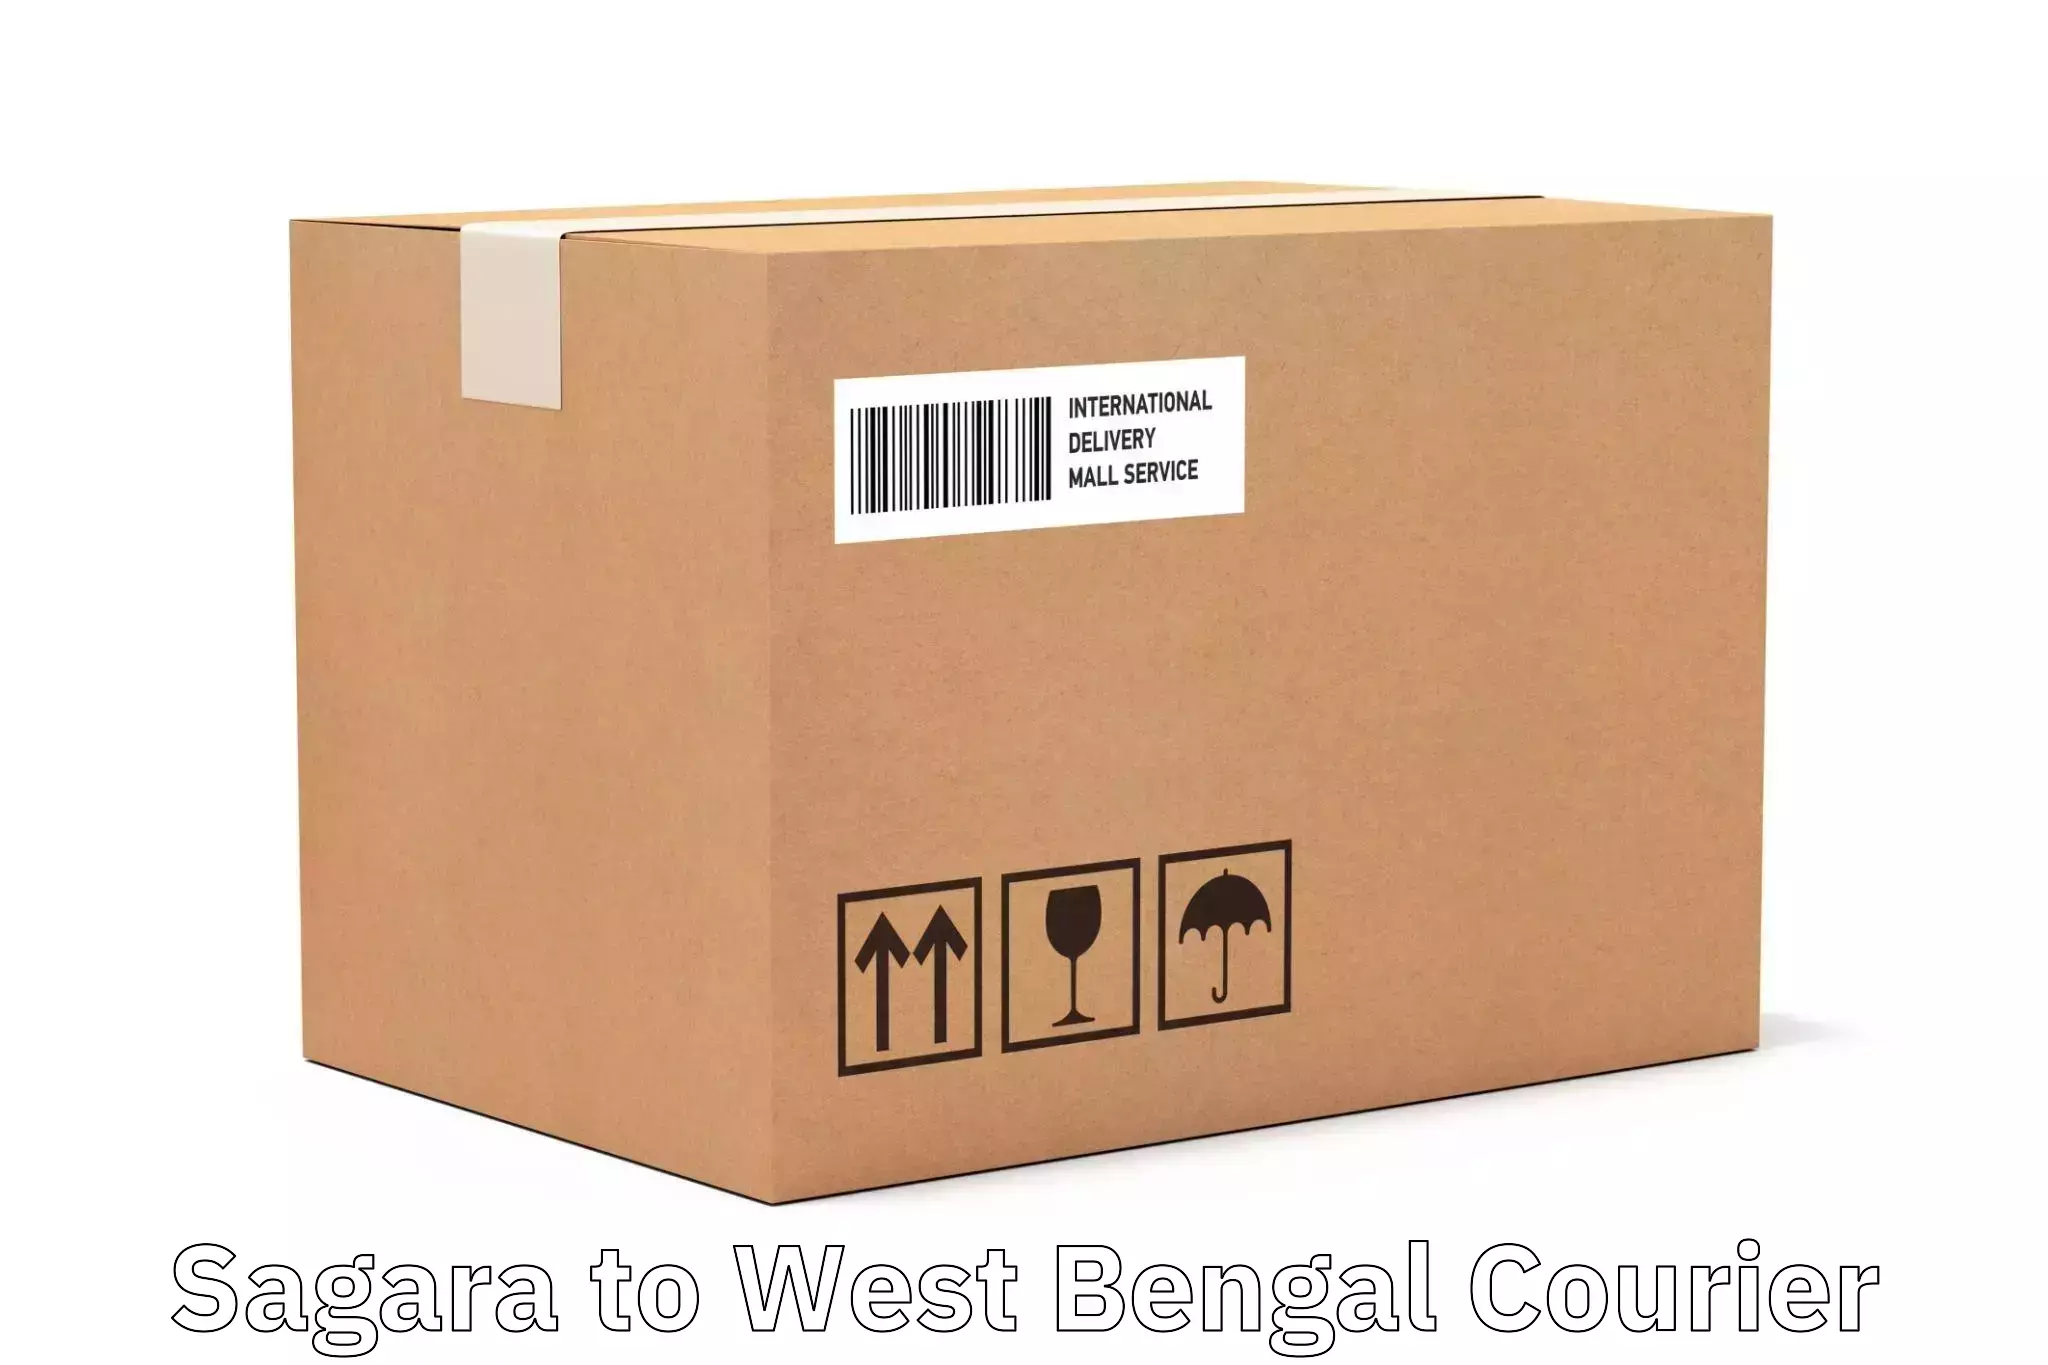 Express logistics service Sagara to West Bengal